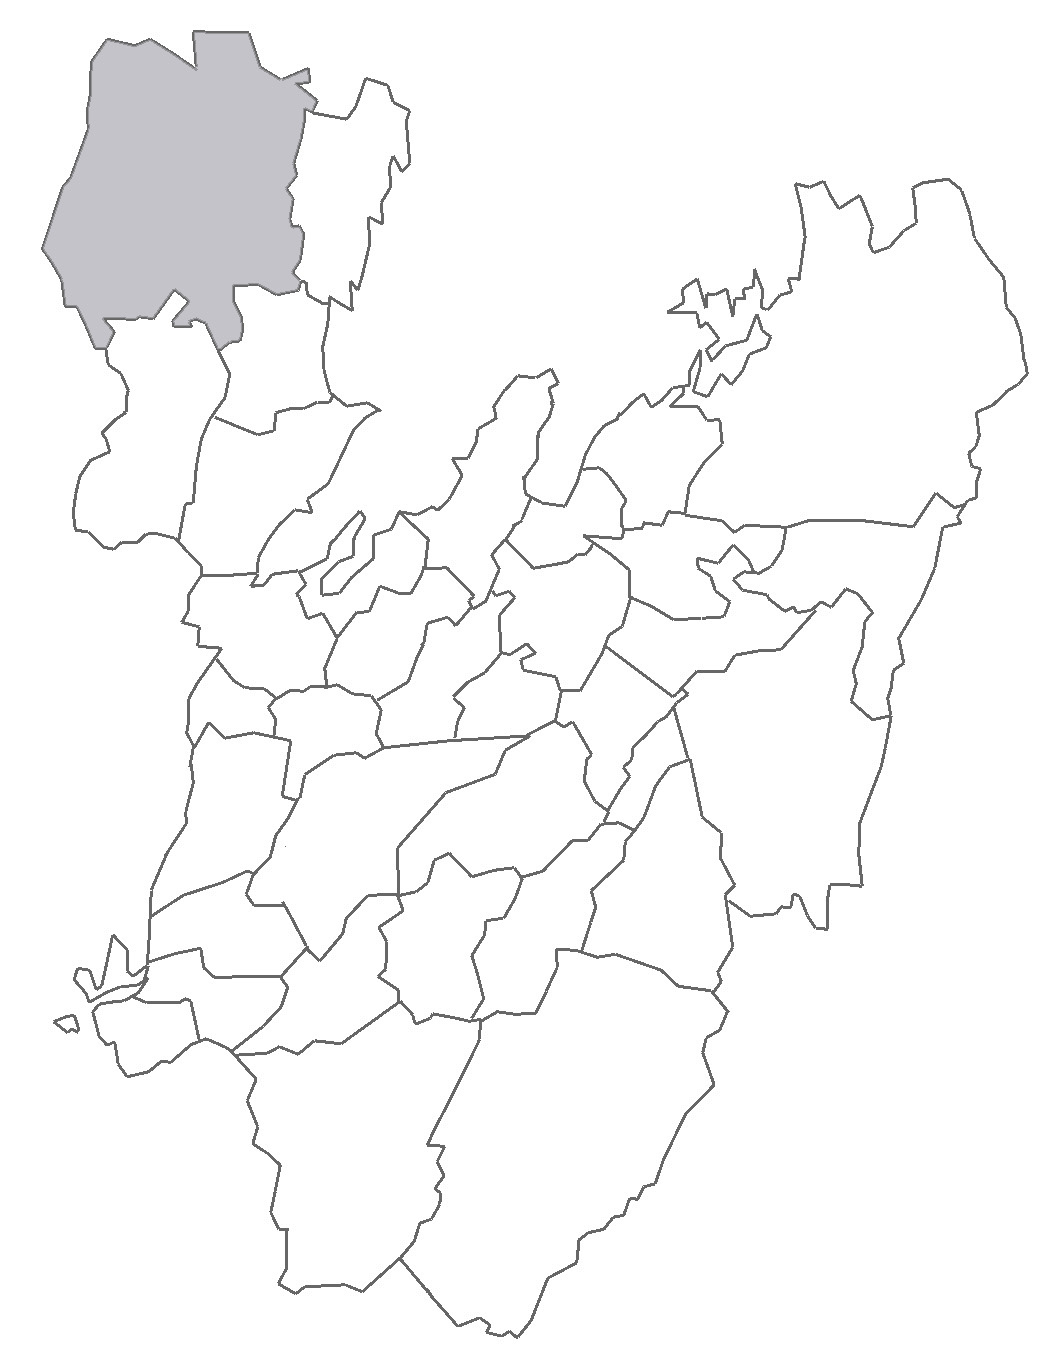 Vedbo härad i Dalsland